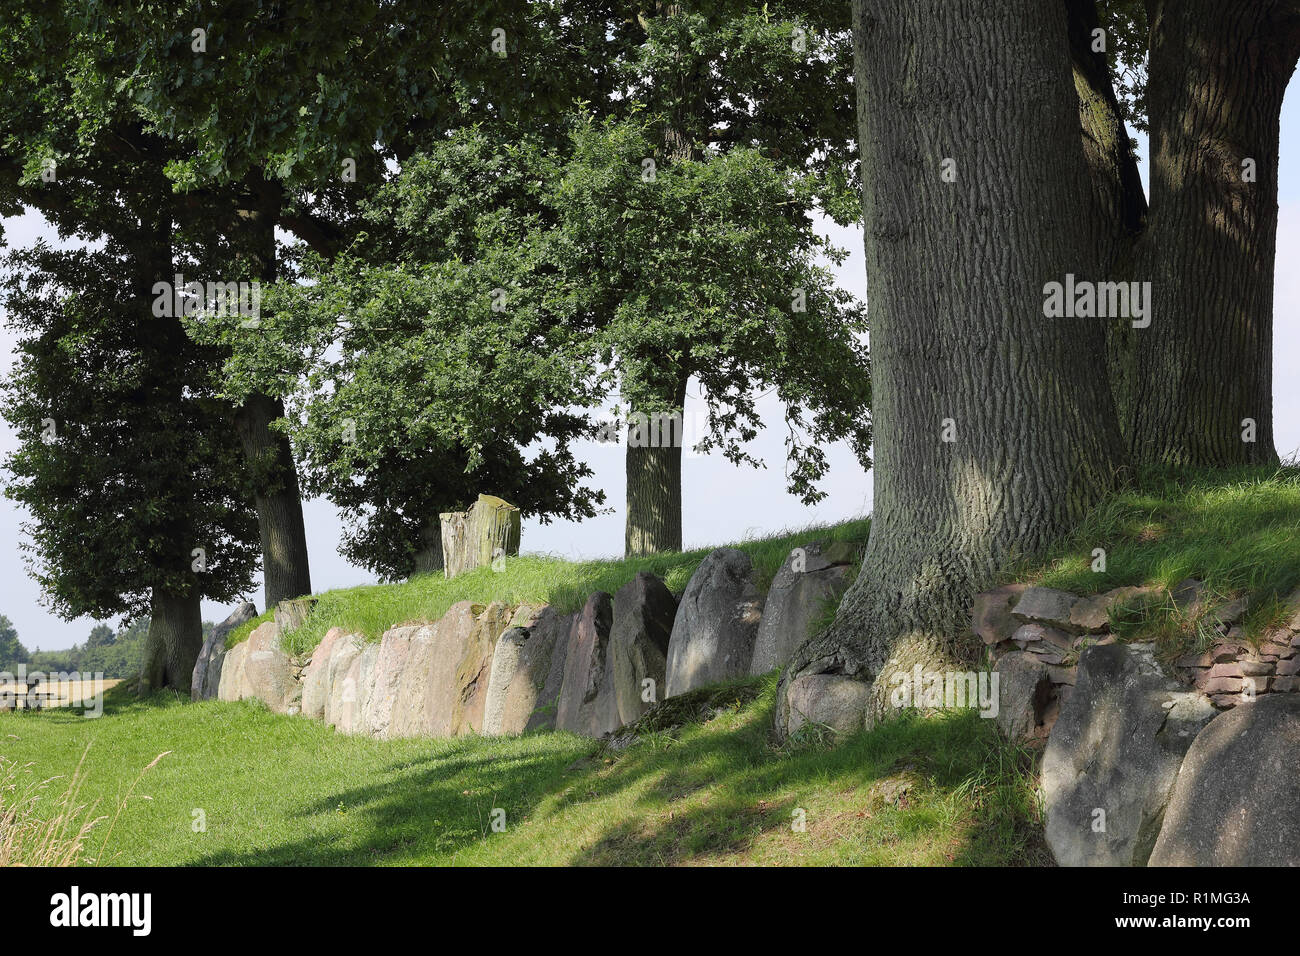 La reconstruction de la tombe mégalithique de Karlsminde, dans le Nord de l'Allemagne Banque D'Images